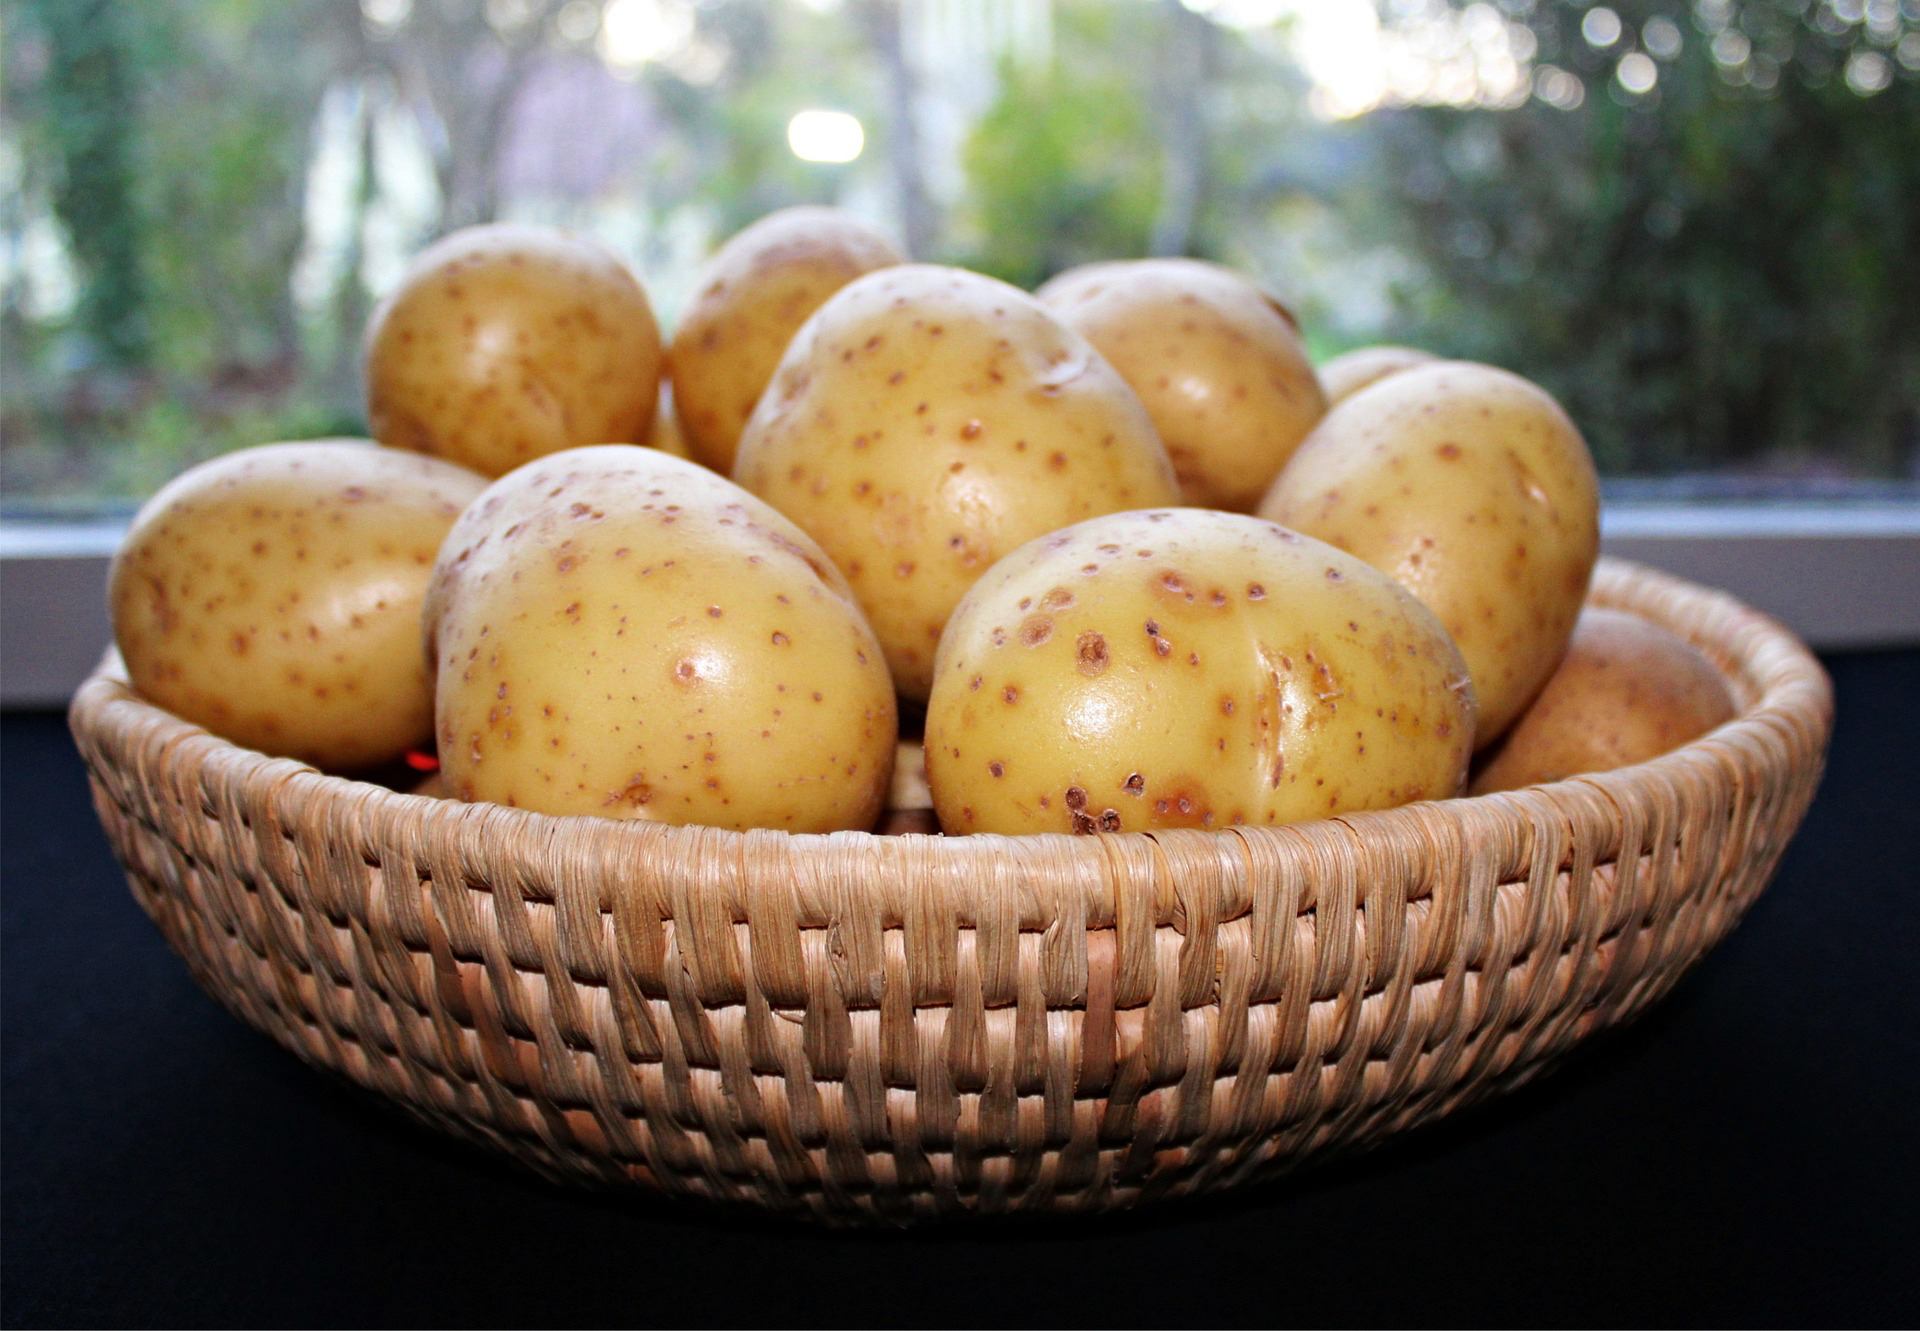 Contrairement aux idées reçues, la pomme de terre est assez pauvre en calories si elle n'est pas accompagnée de sauces ou&nbsp;de graisses. © Pixabay